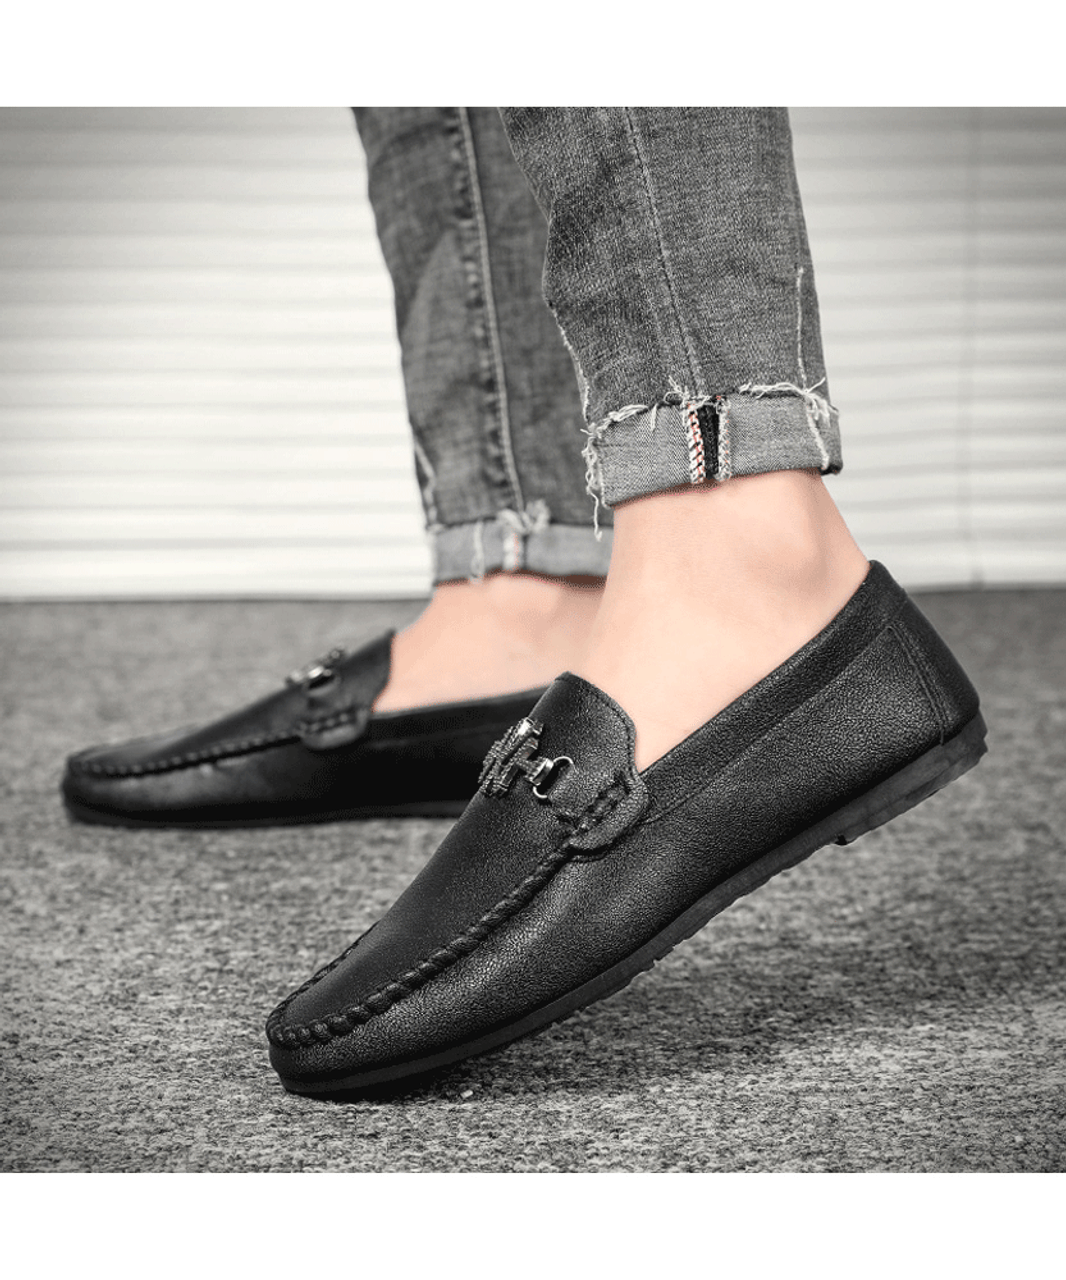 Black N Y buckle on vamp leather slip on shoe loafer | Mens shoe ...